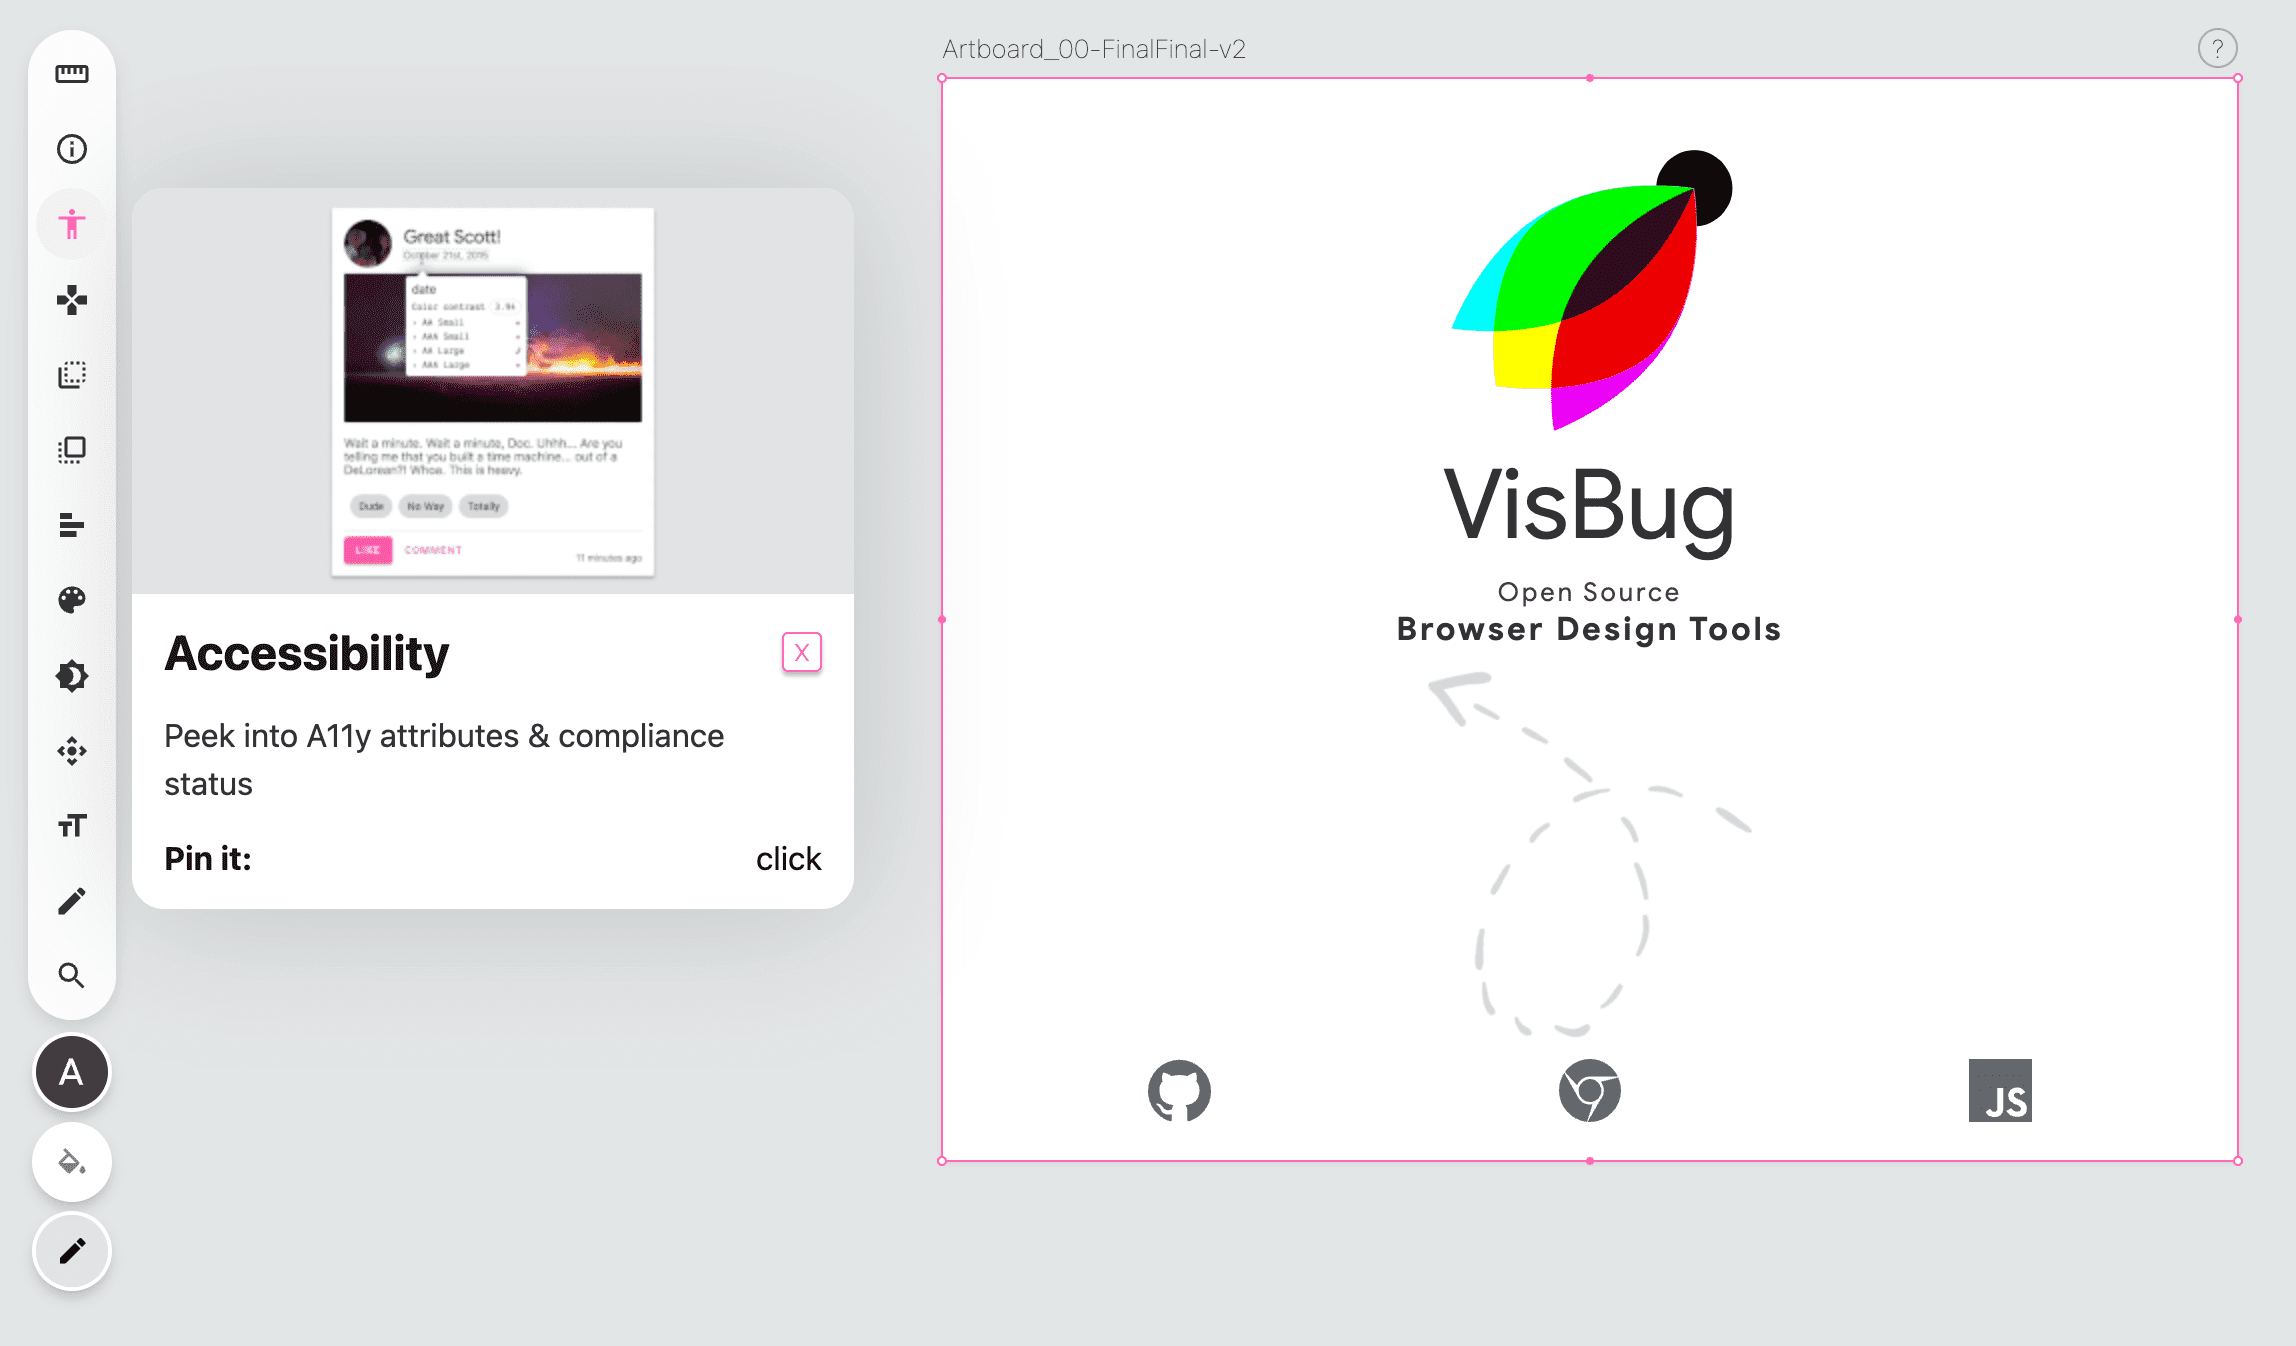 Снимок экрана панели инструментов VisBug в левой части пустой страницы, значок инструмента специальных возможностей имеет розовый цвет и всплывающее окно с инструкциями по работе с инструментом.